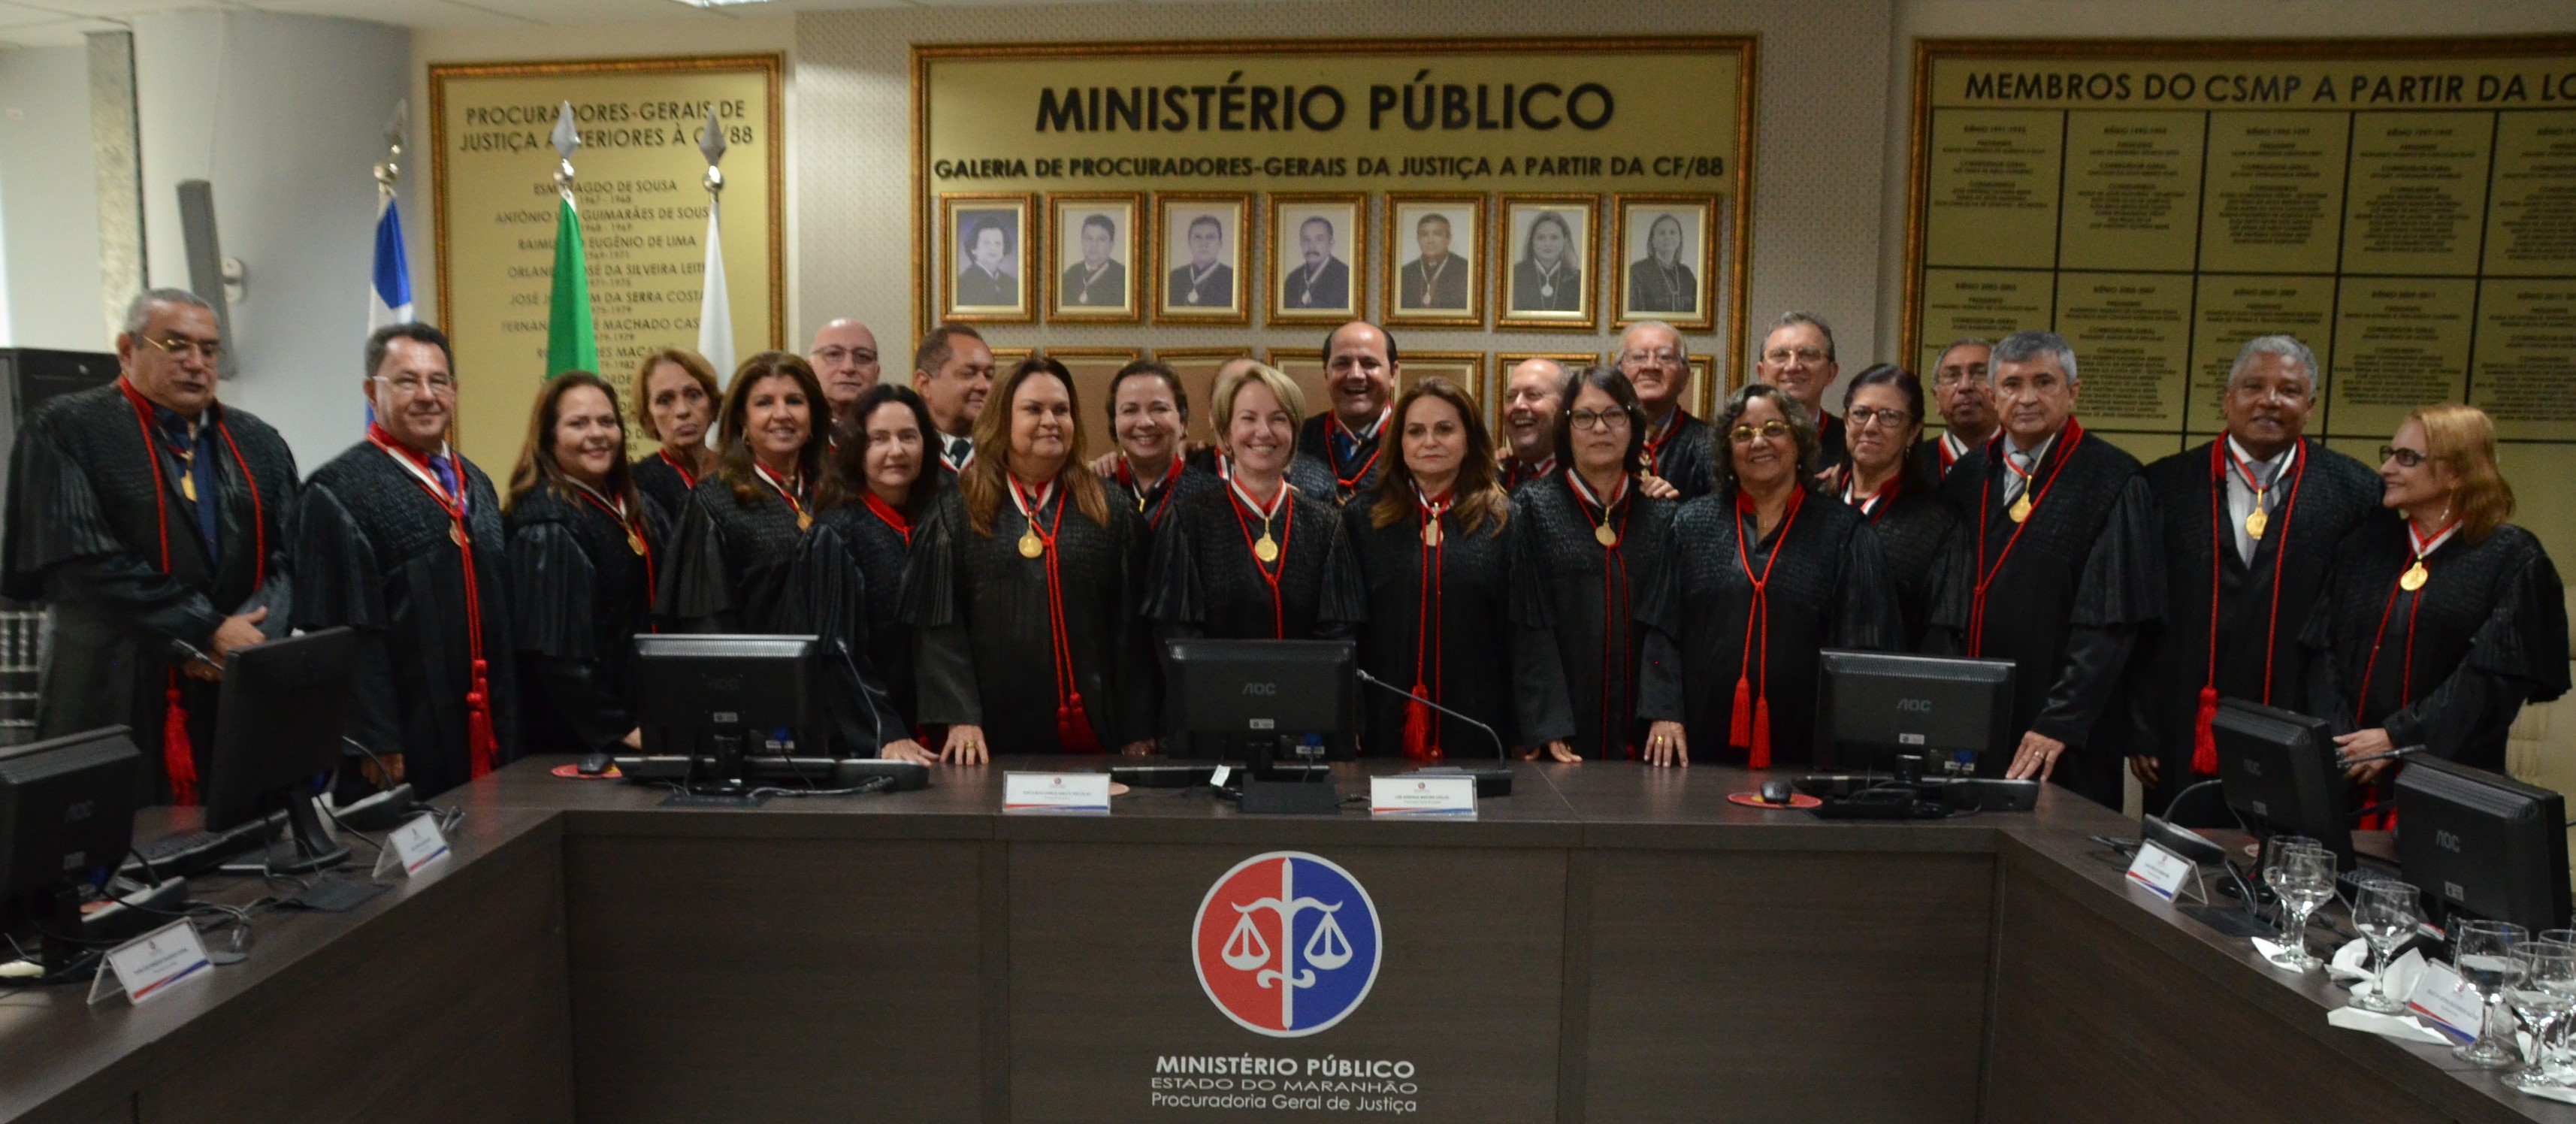 Colegio Procuradores de Justiça 2019